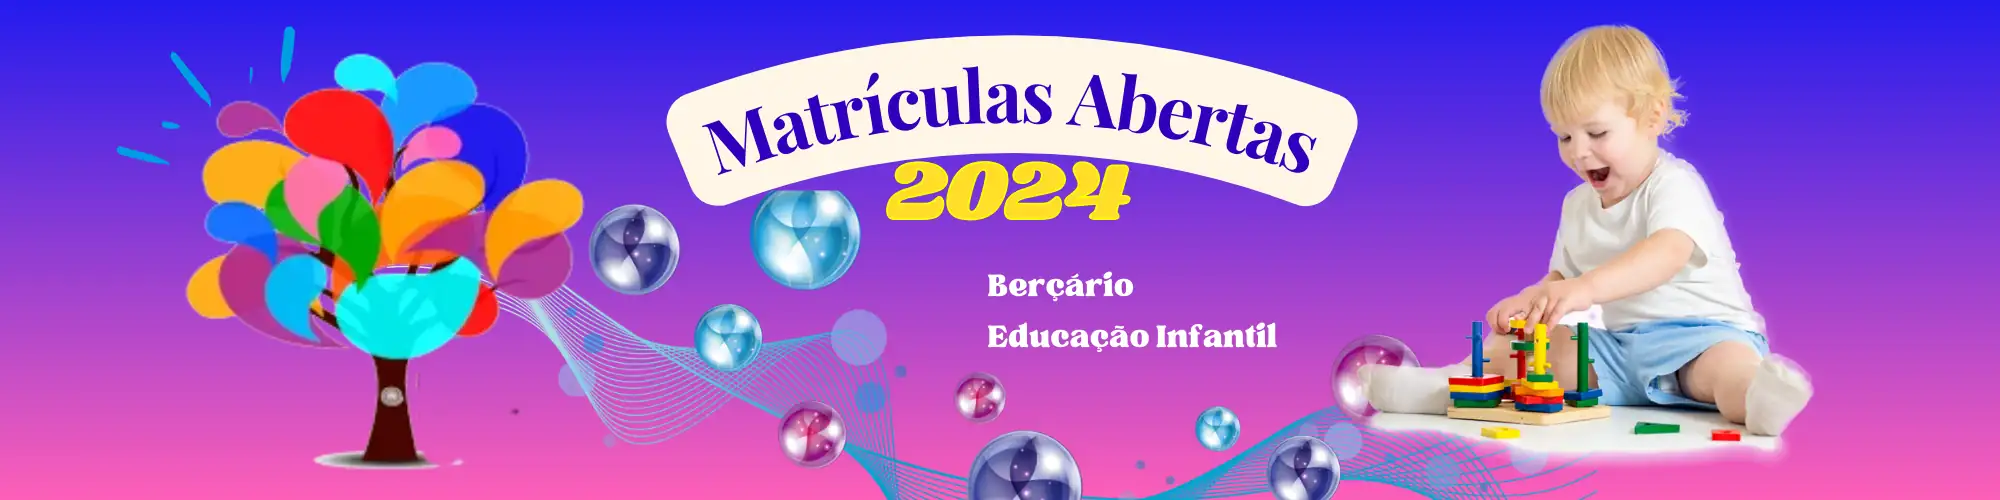 bercario_guarulhos_escola_baby_happy_jardim_santa_francisca_guarulhos